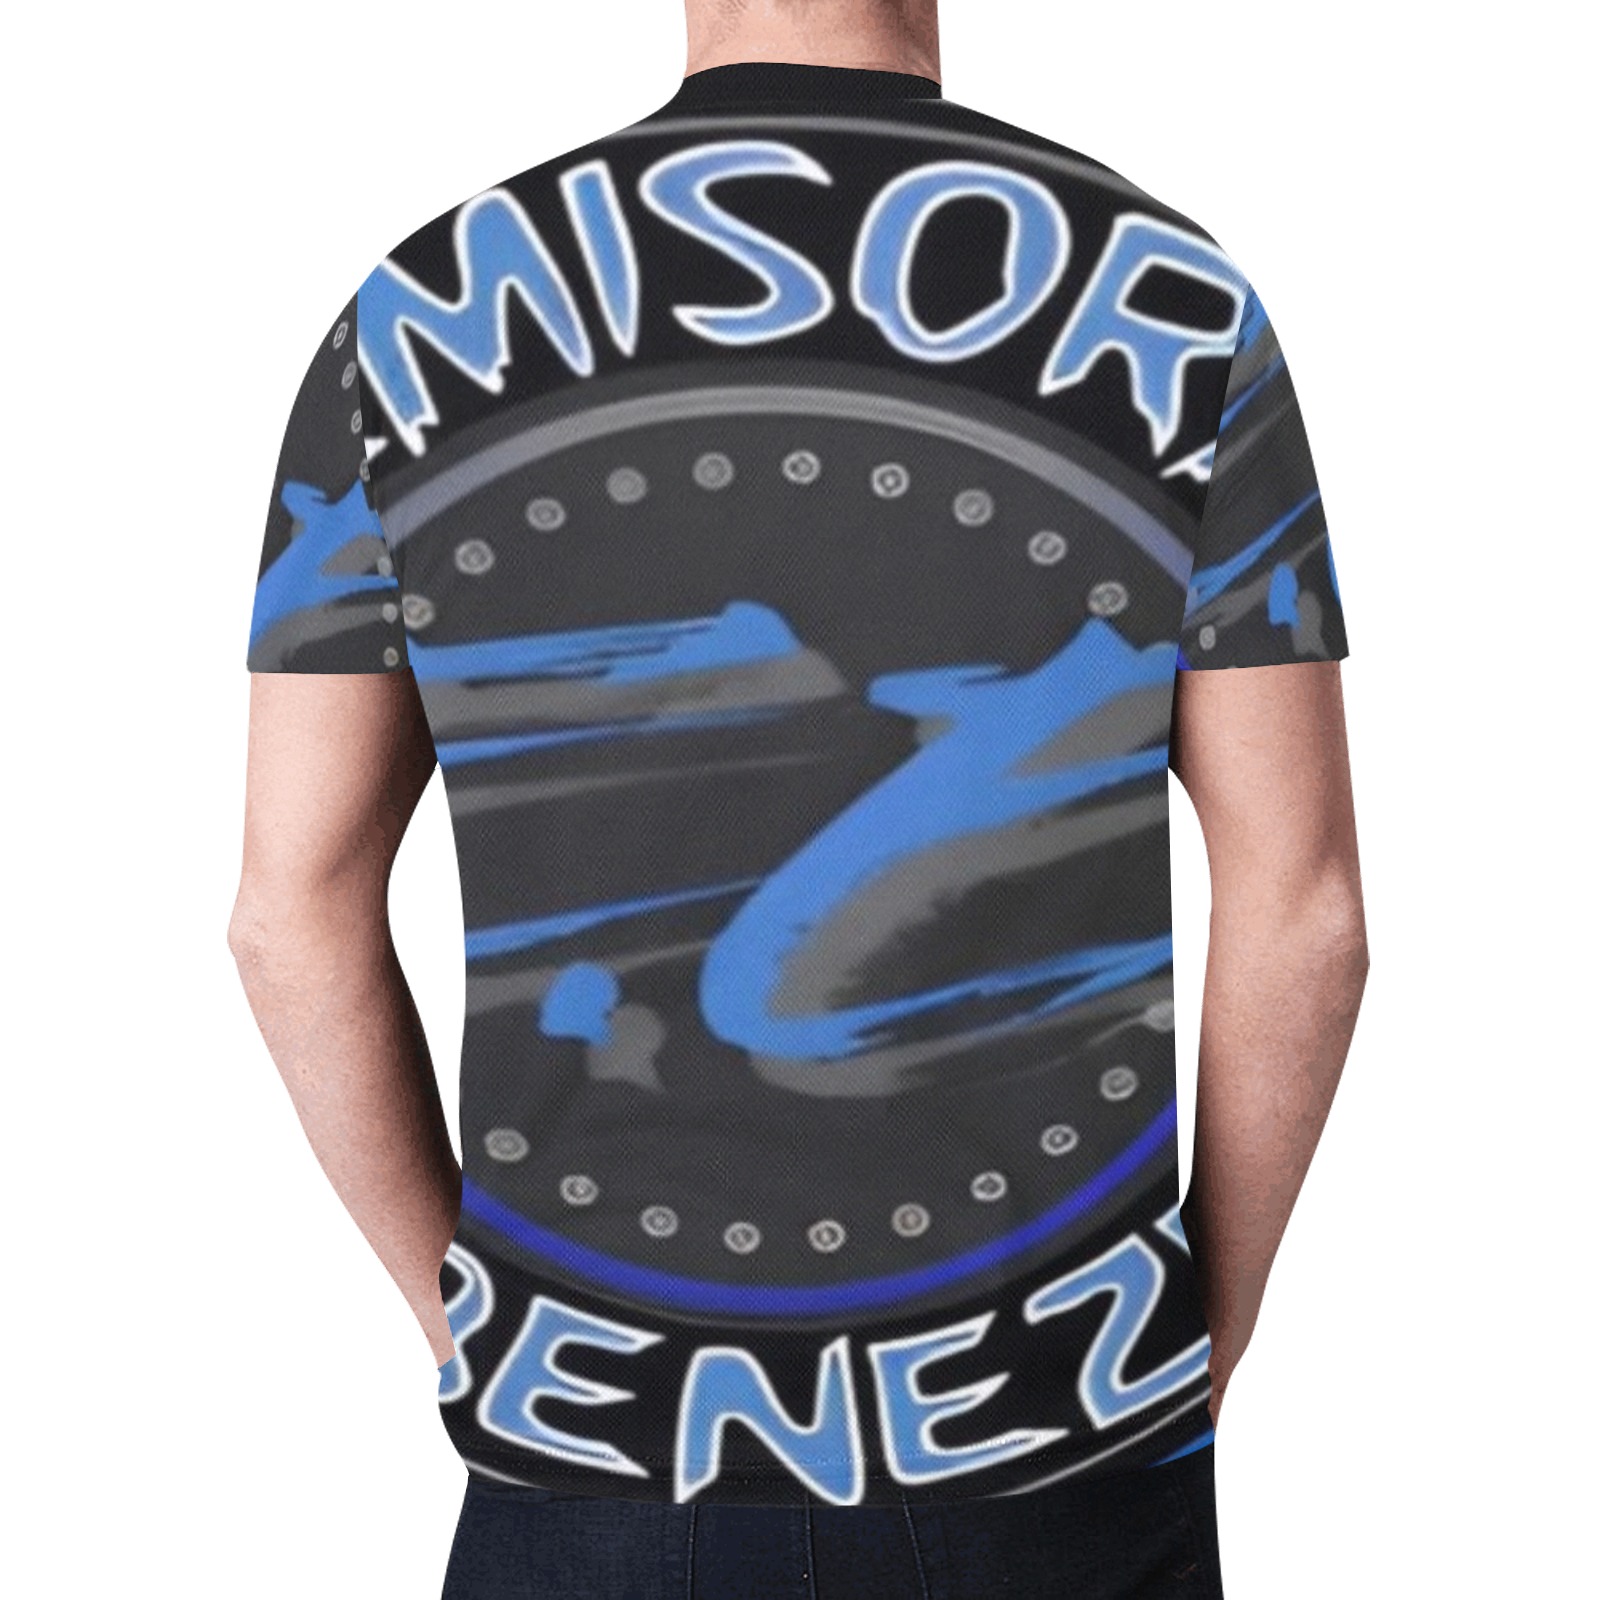 Emisora Ebenezer Allover Print T-shirt New All Over Print T-shirt for Men (Model T45)